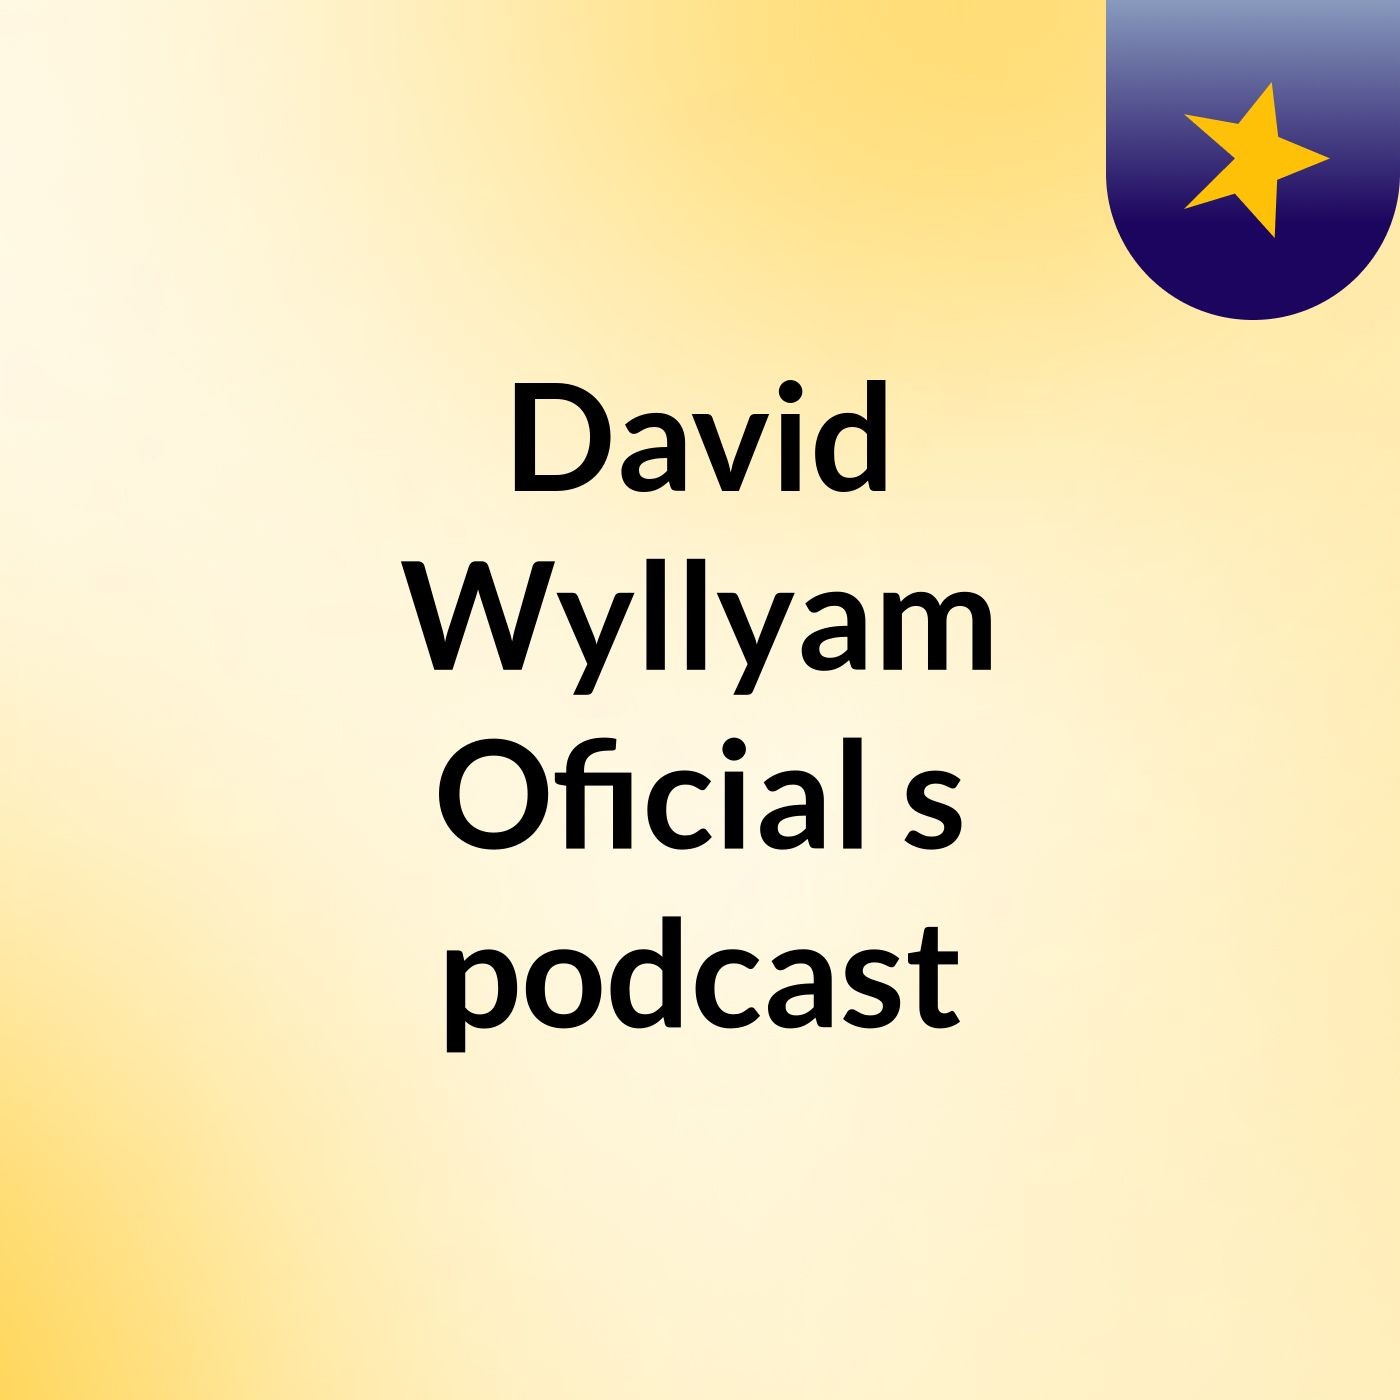 David Wyllyam Oficial's podcast